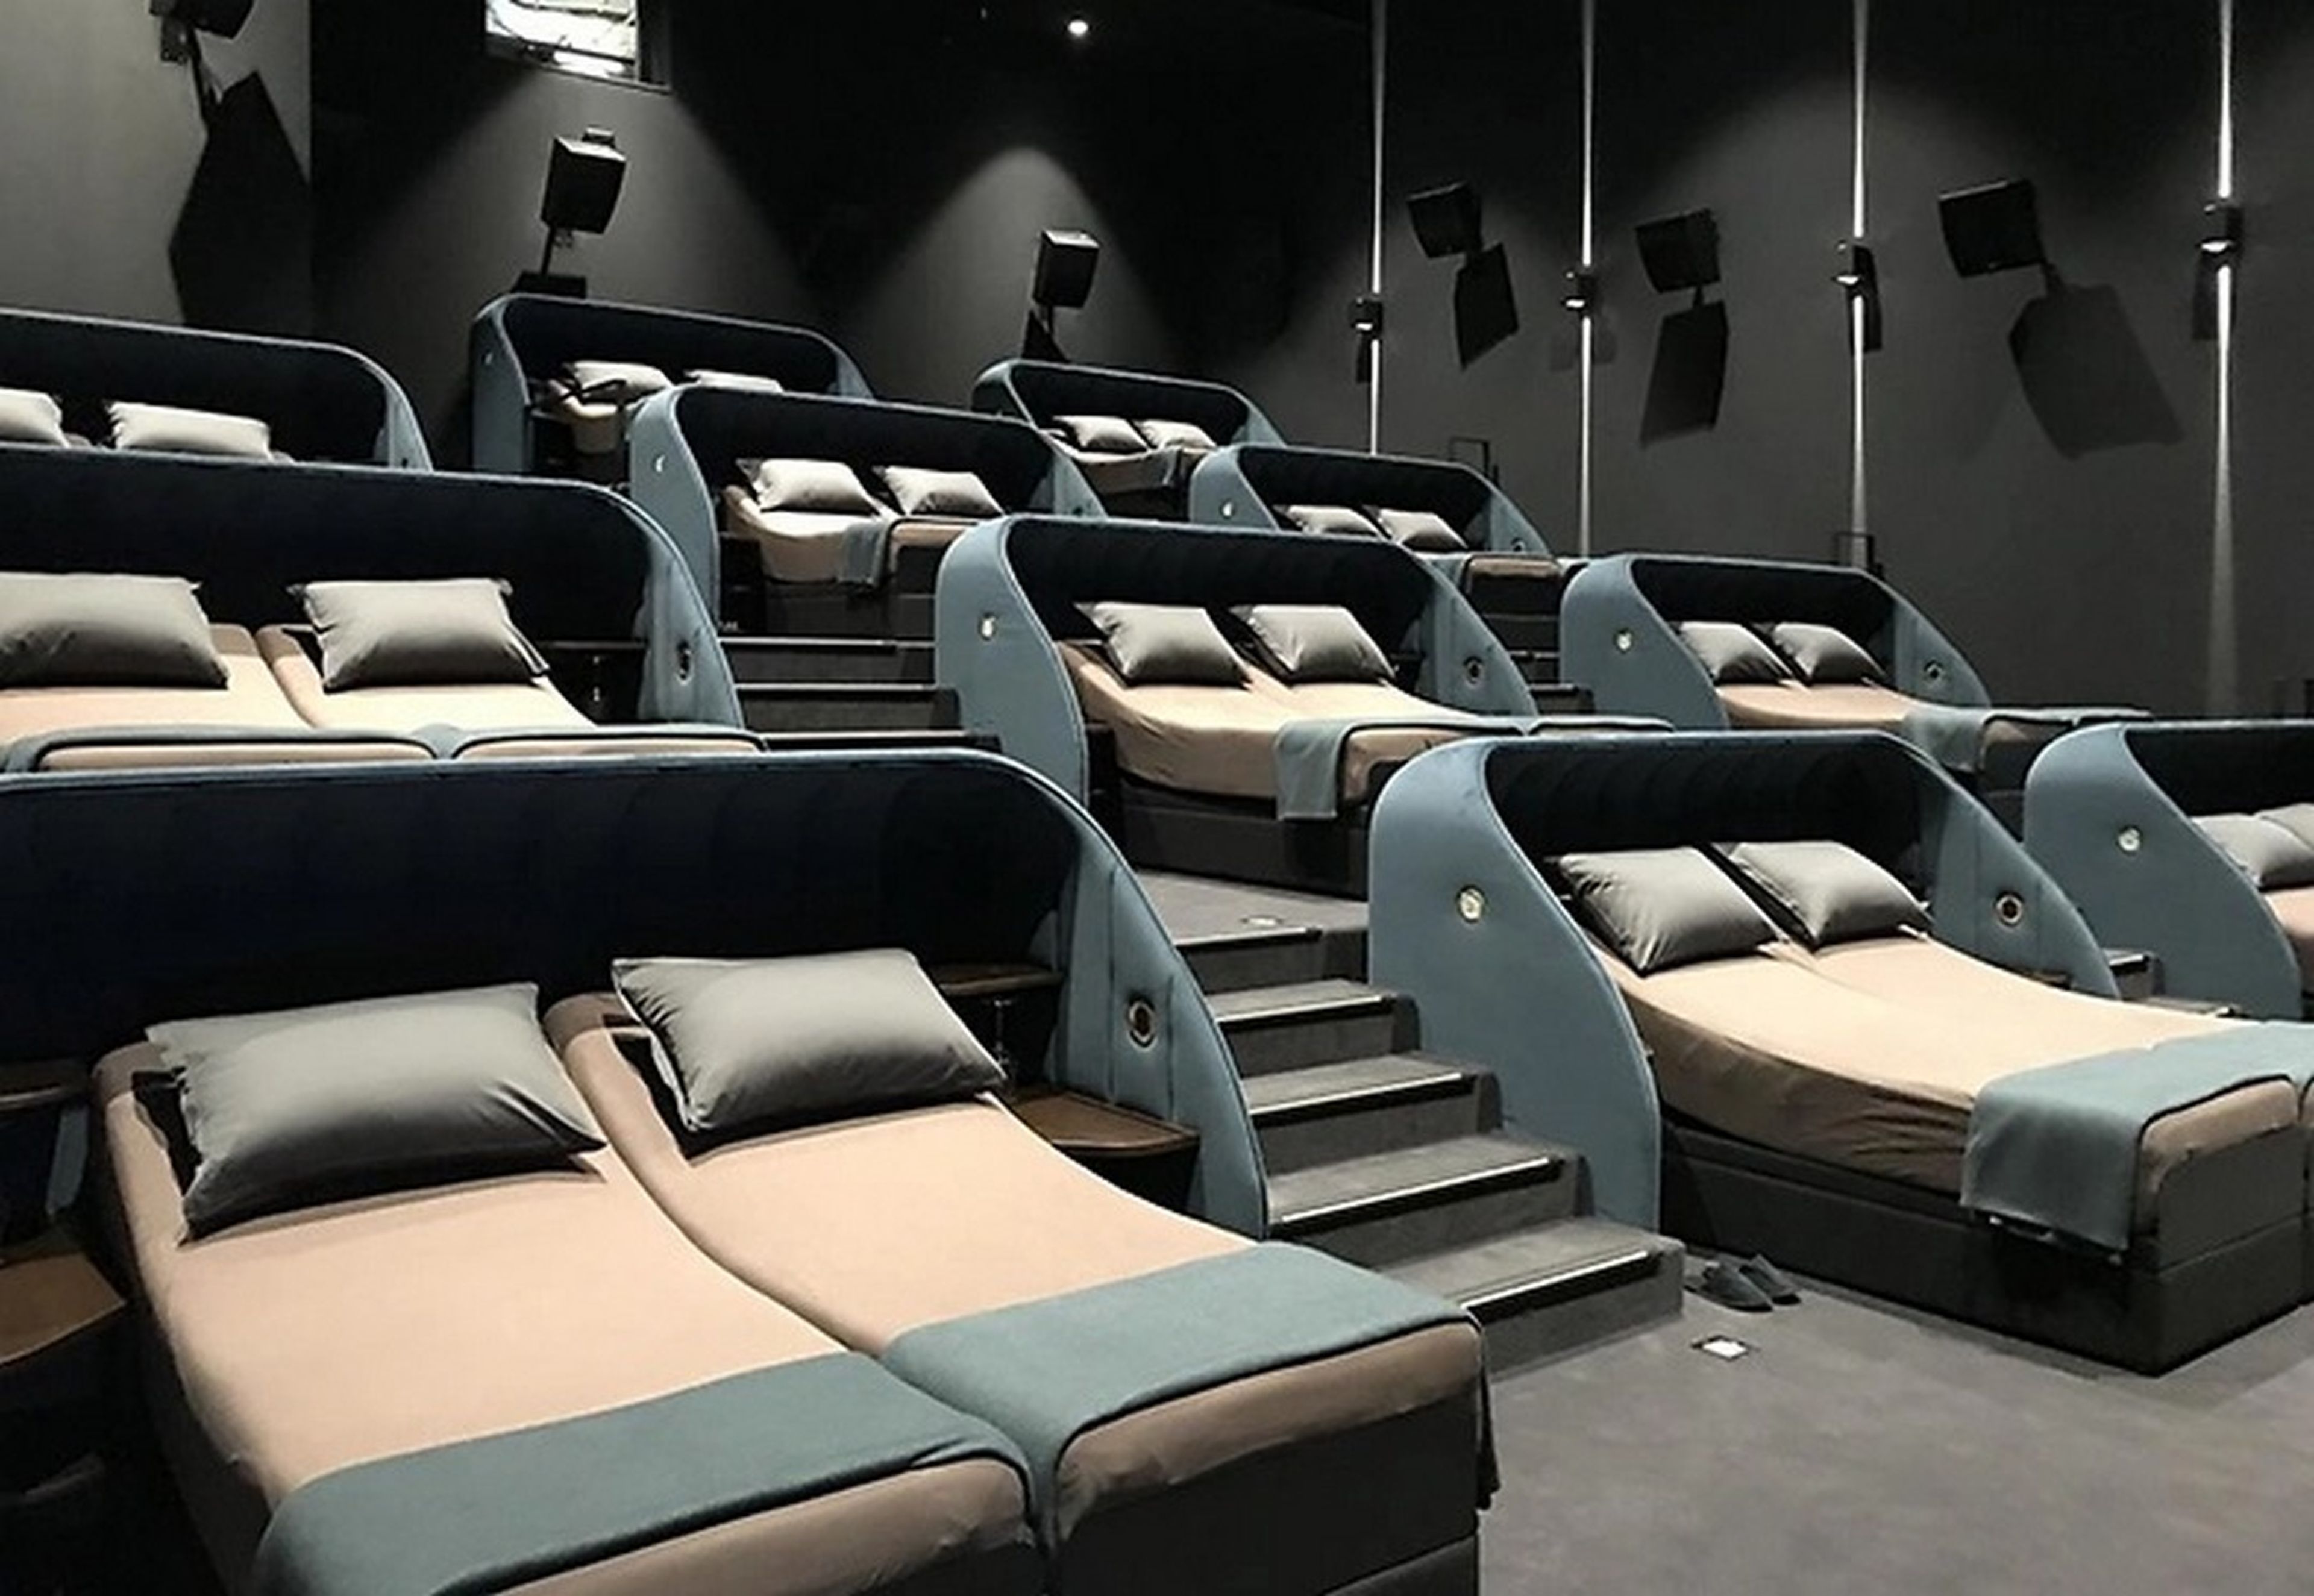 Este cine suizo ha cambiado los asientos por camas